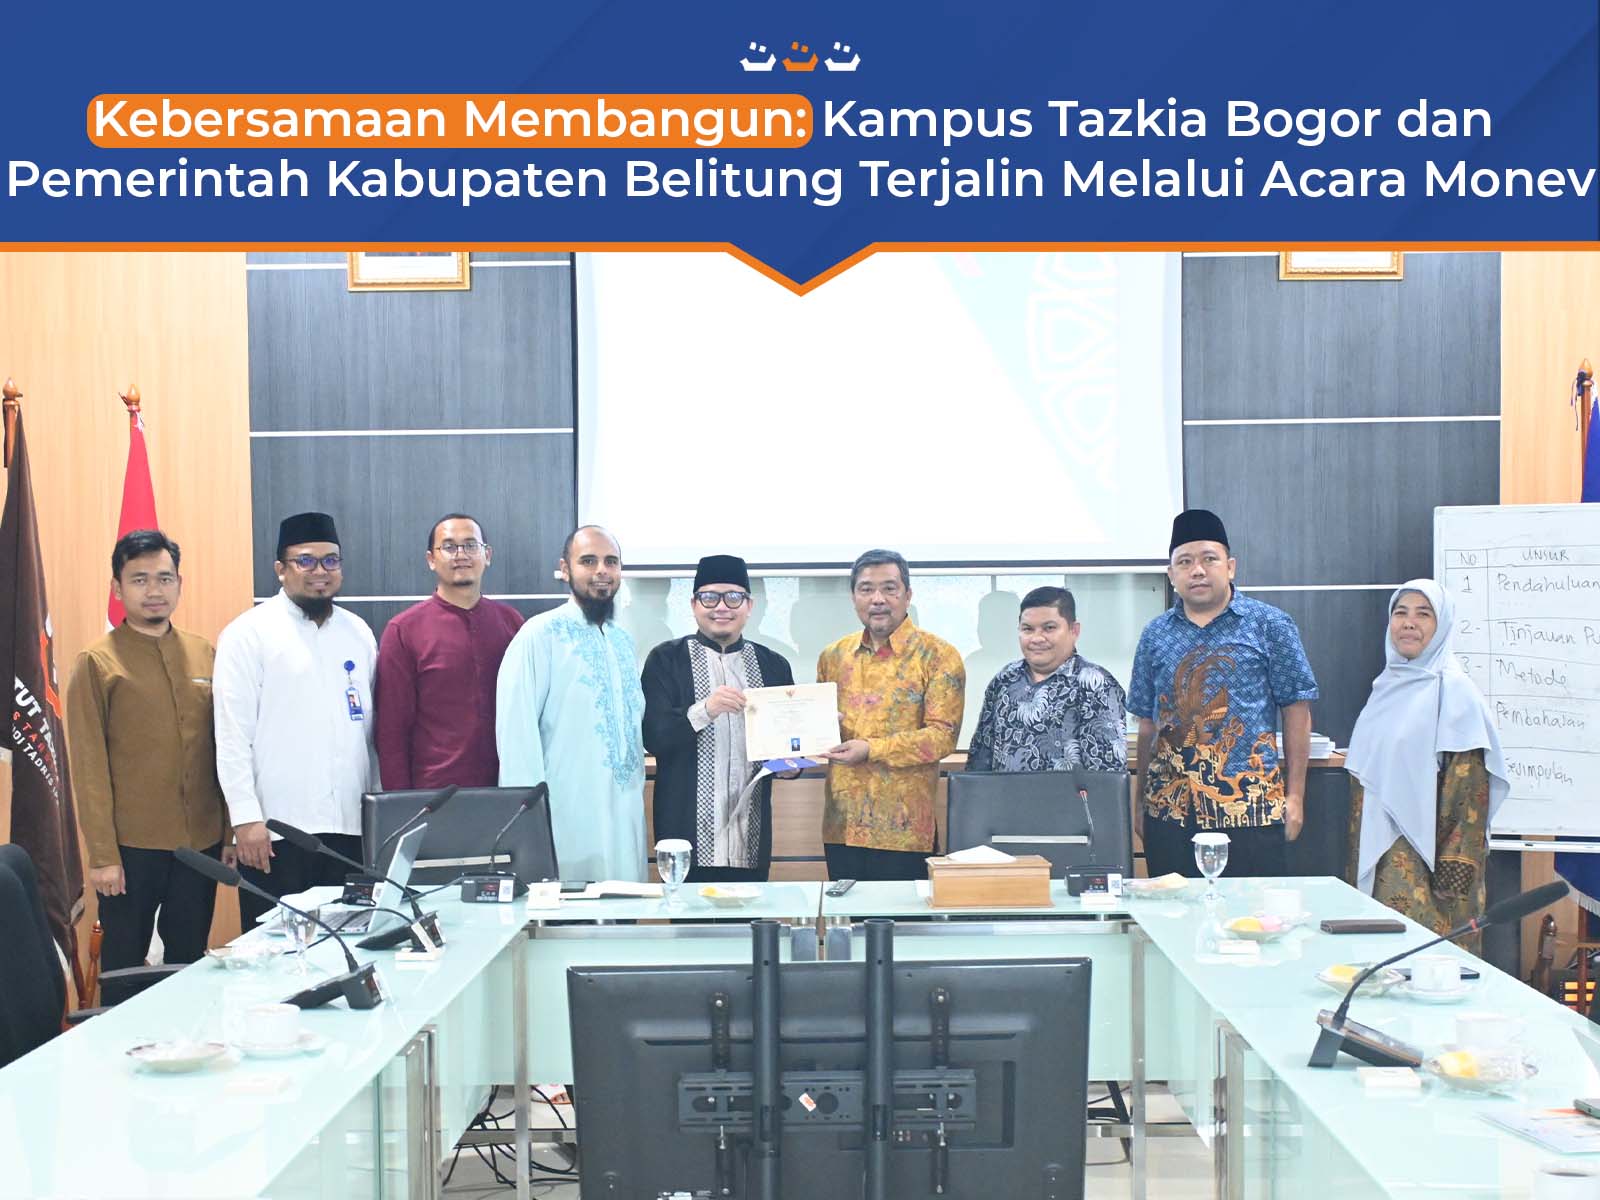 Kebersamaan Membangun: Kampus Tazkia Bogor dan Pemerintah Kabupaten Belitung Terjalin Melalui Acara Monev